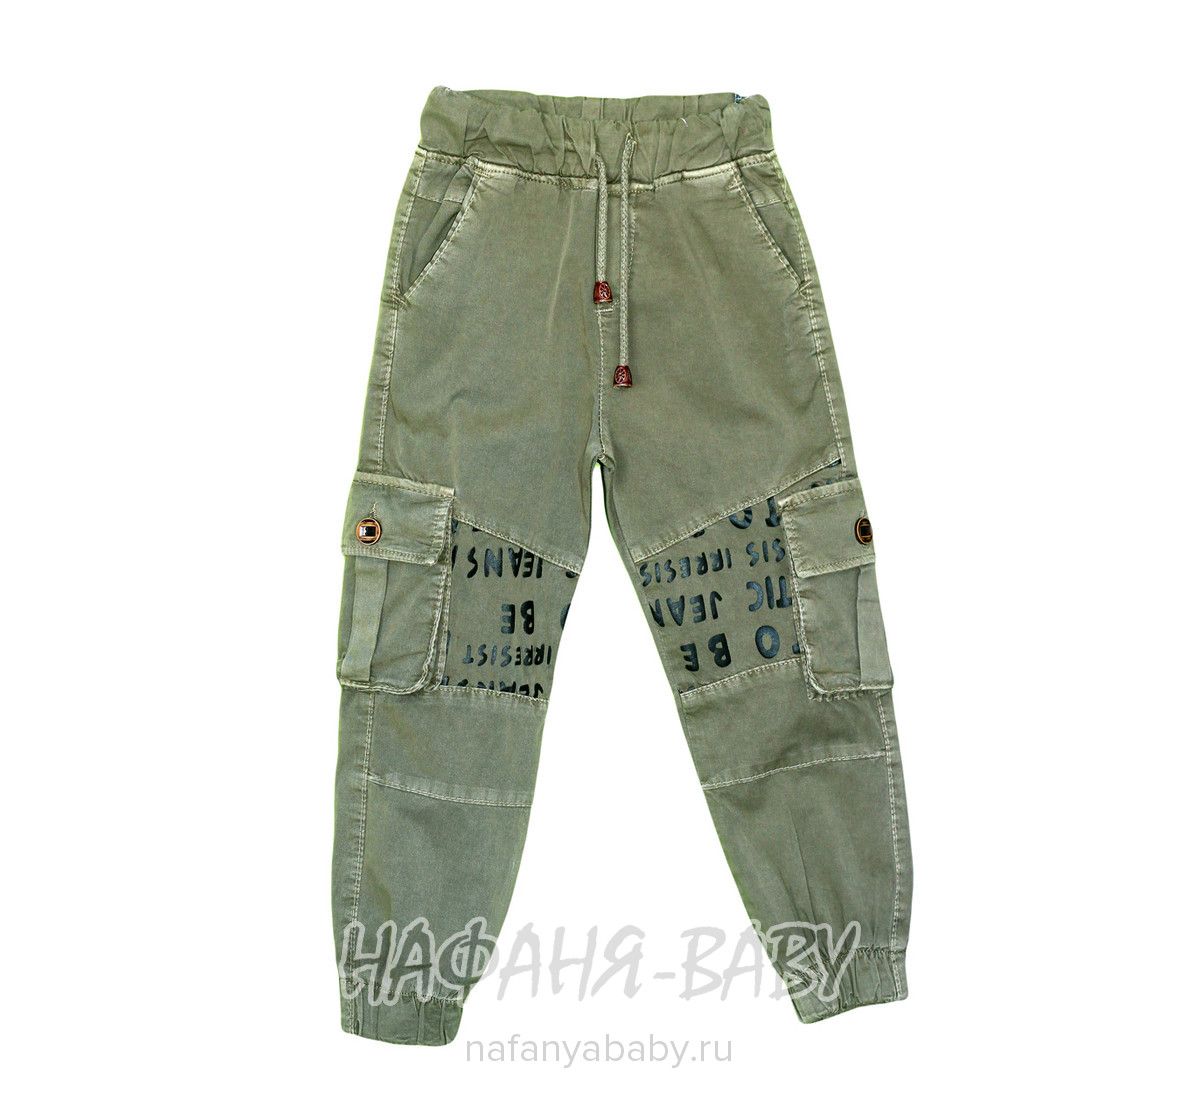 Подростковые брюки для мальчика TATI Jeans арт: 1739, 10-15 лет, 5-9 лет, оптом Турция